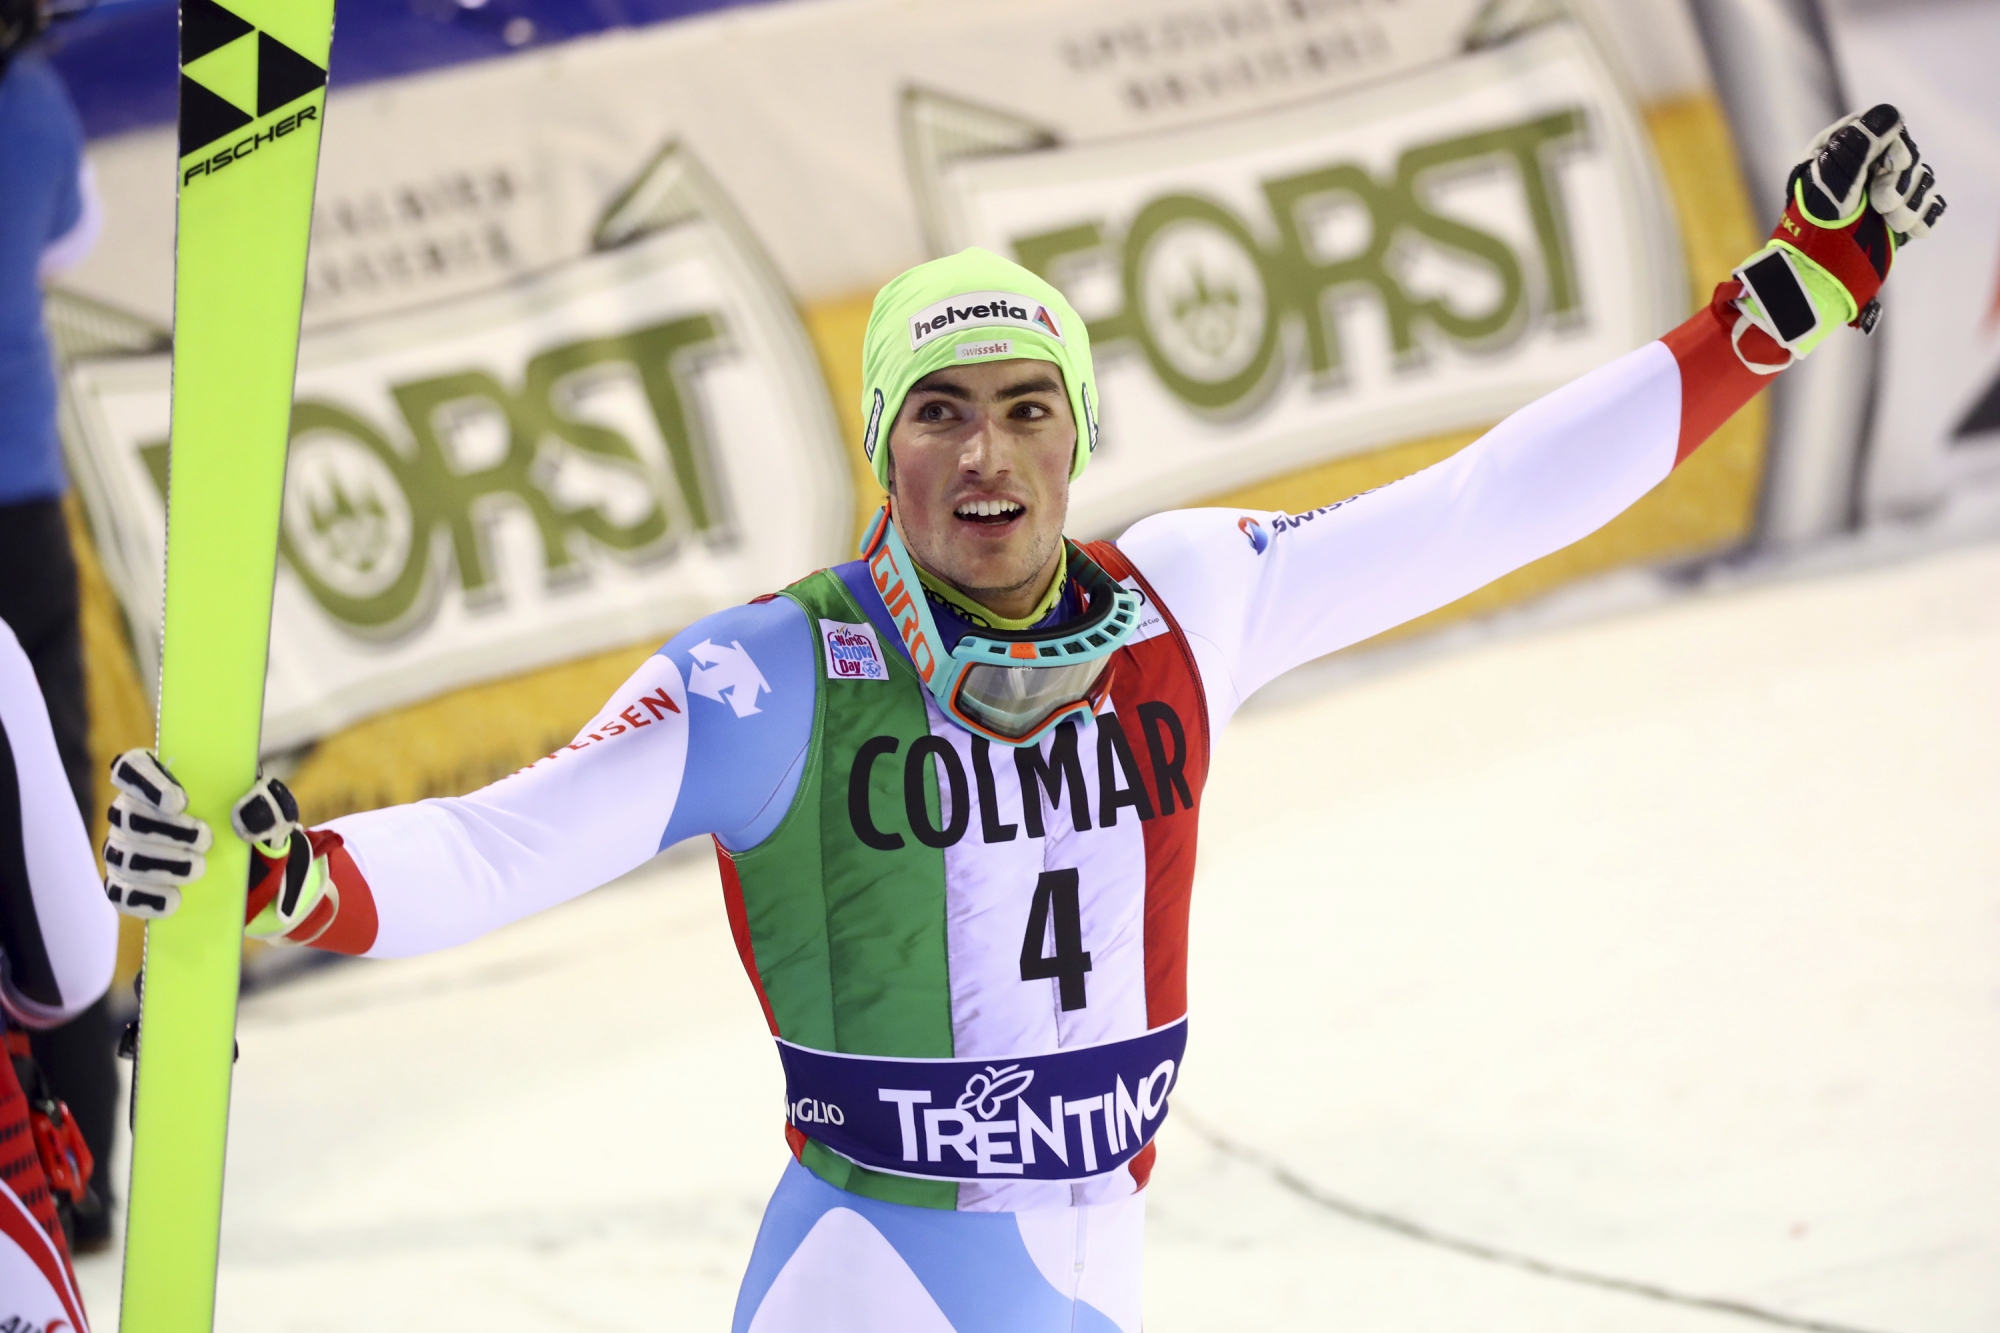 Trois podiums et une première victoire en Coupe du monde sur le slalom spécial pour Daniel Yule lors de la saison qui a pris fin dimanche dernier.